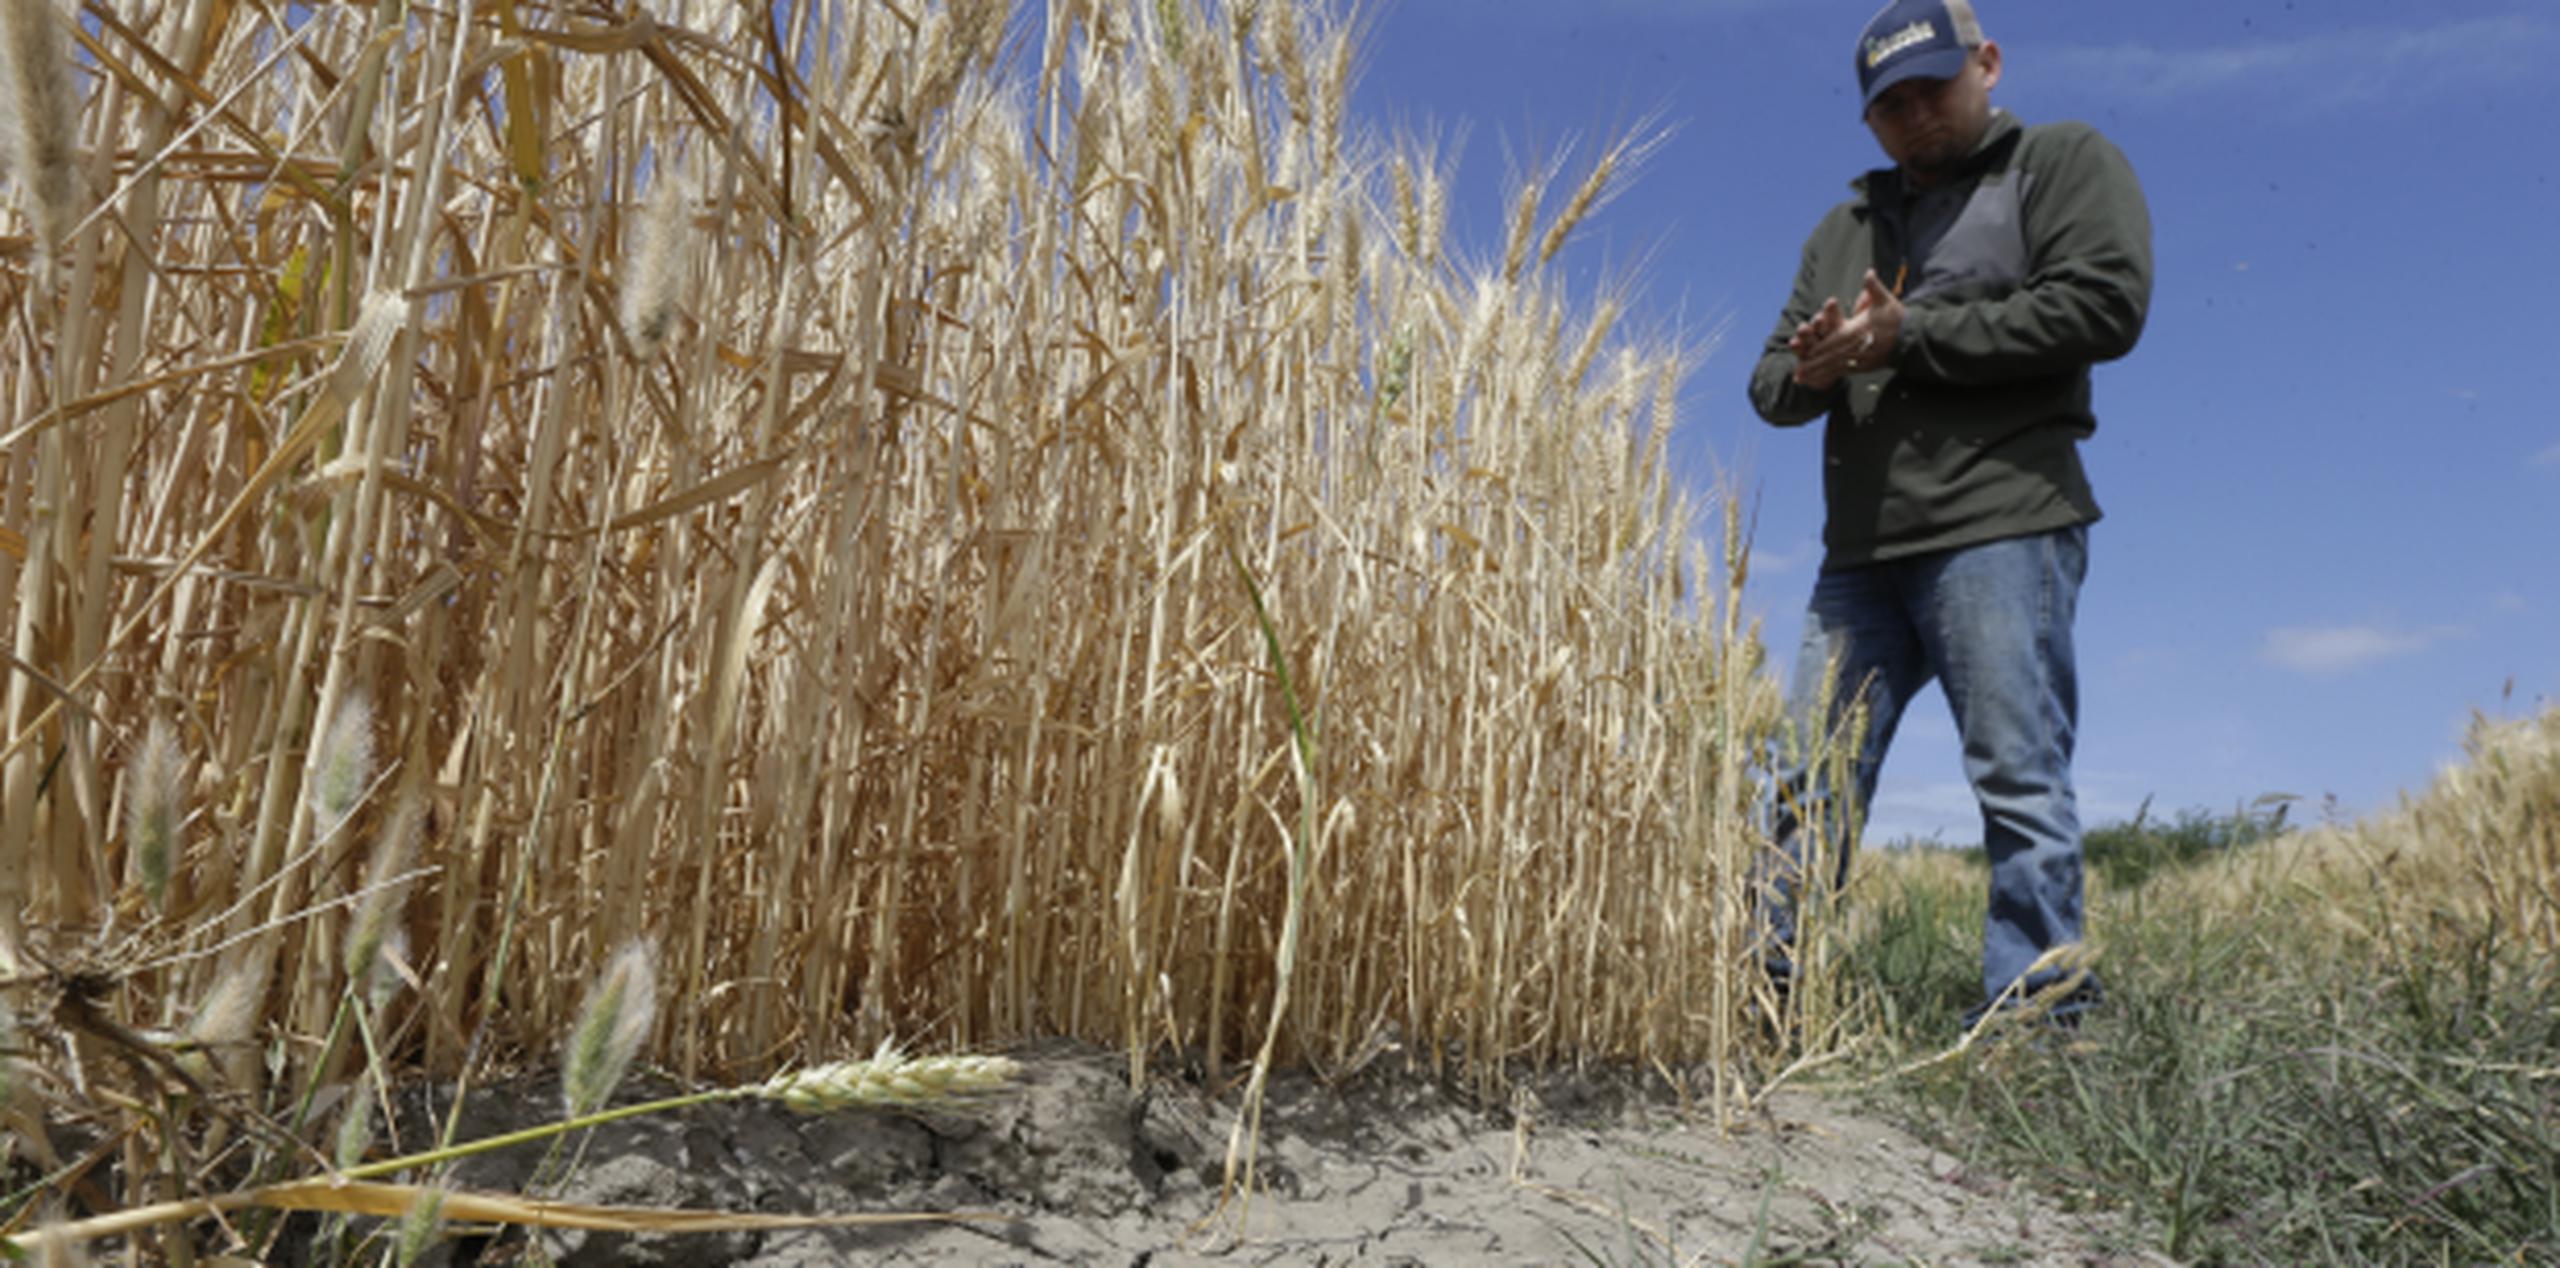 Este agricultor observa su cosecha en California, que ha enfrentado la peor sequía en su historia y aun ellos no han podido acceder fondos de FEMA. (AP)